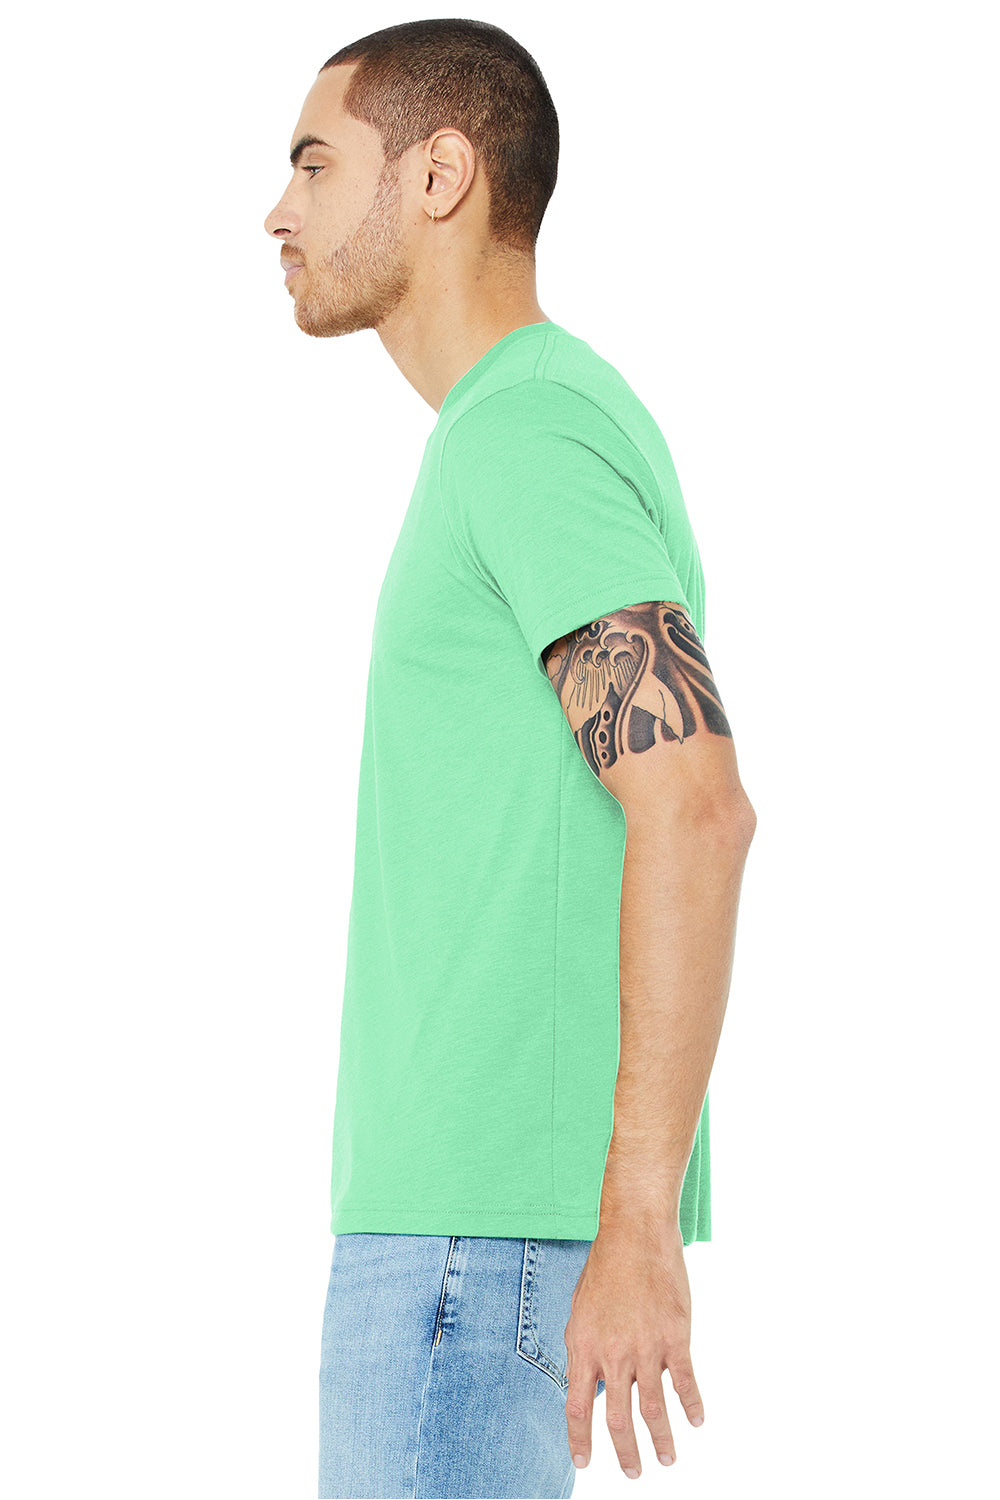 Bella + Canvas BC3413/3413C/3413 Mens Short Sleeve Crewneck T-Shirt Mint Green Model Side